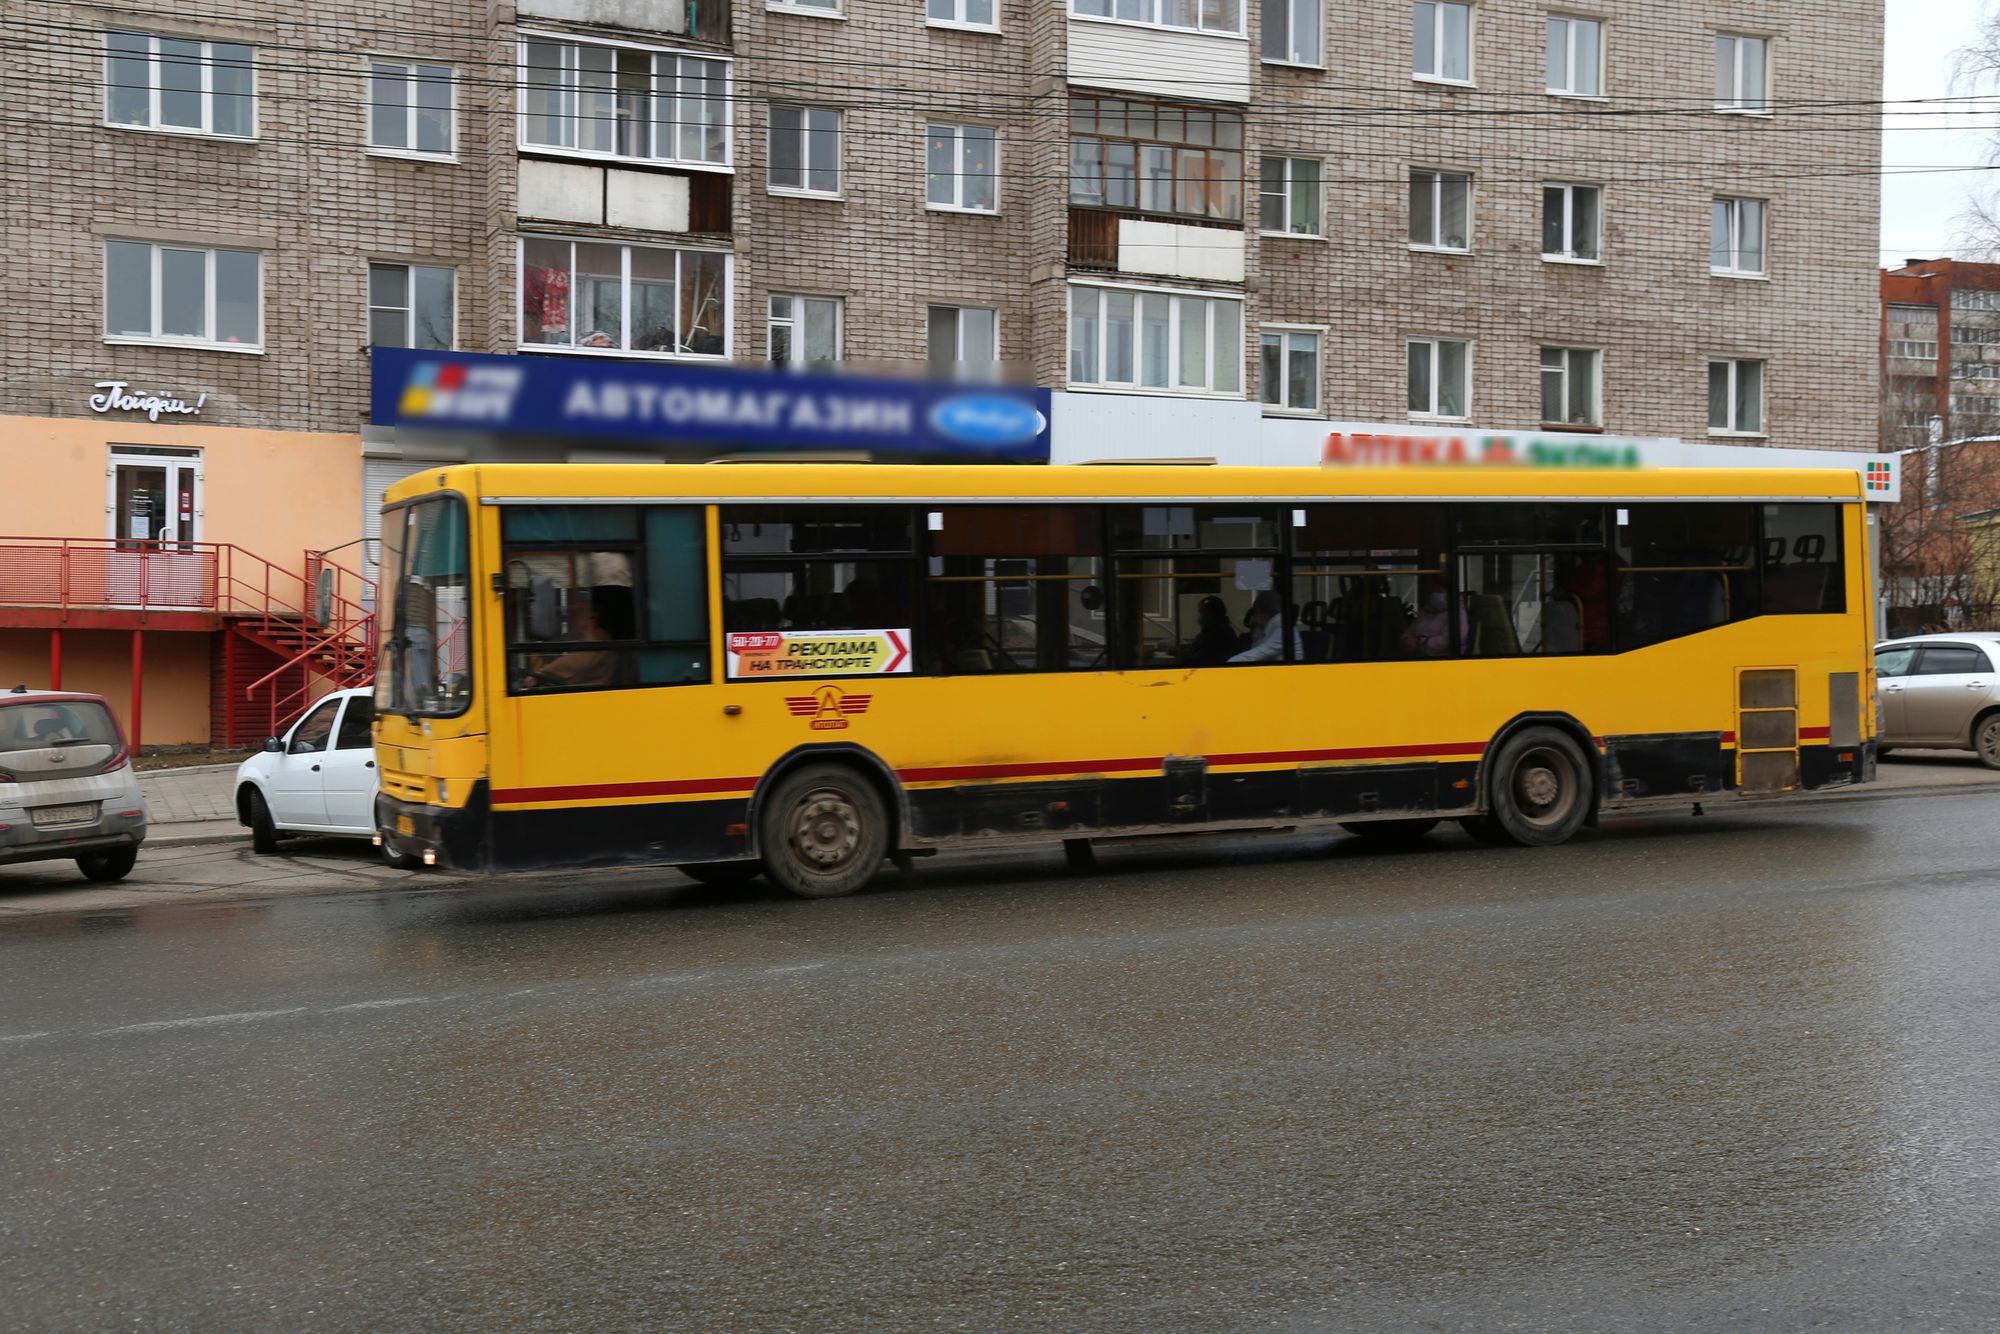 

Четыре школьных автобуса запустят в отдалённые районы Ижевска с 1 сентября

